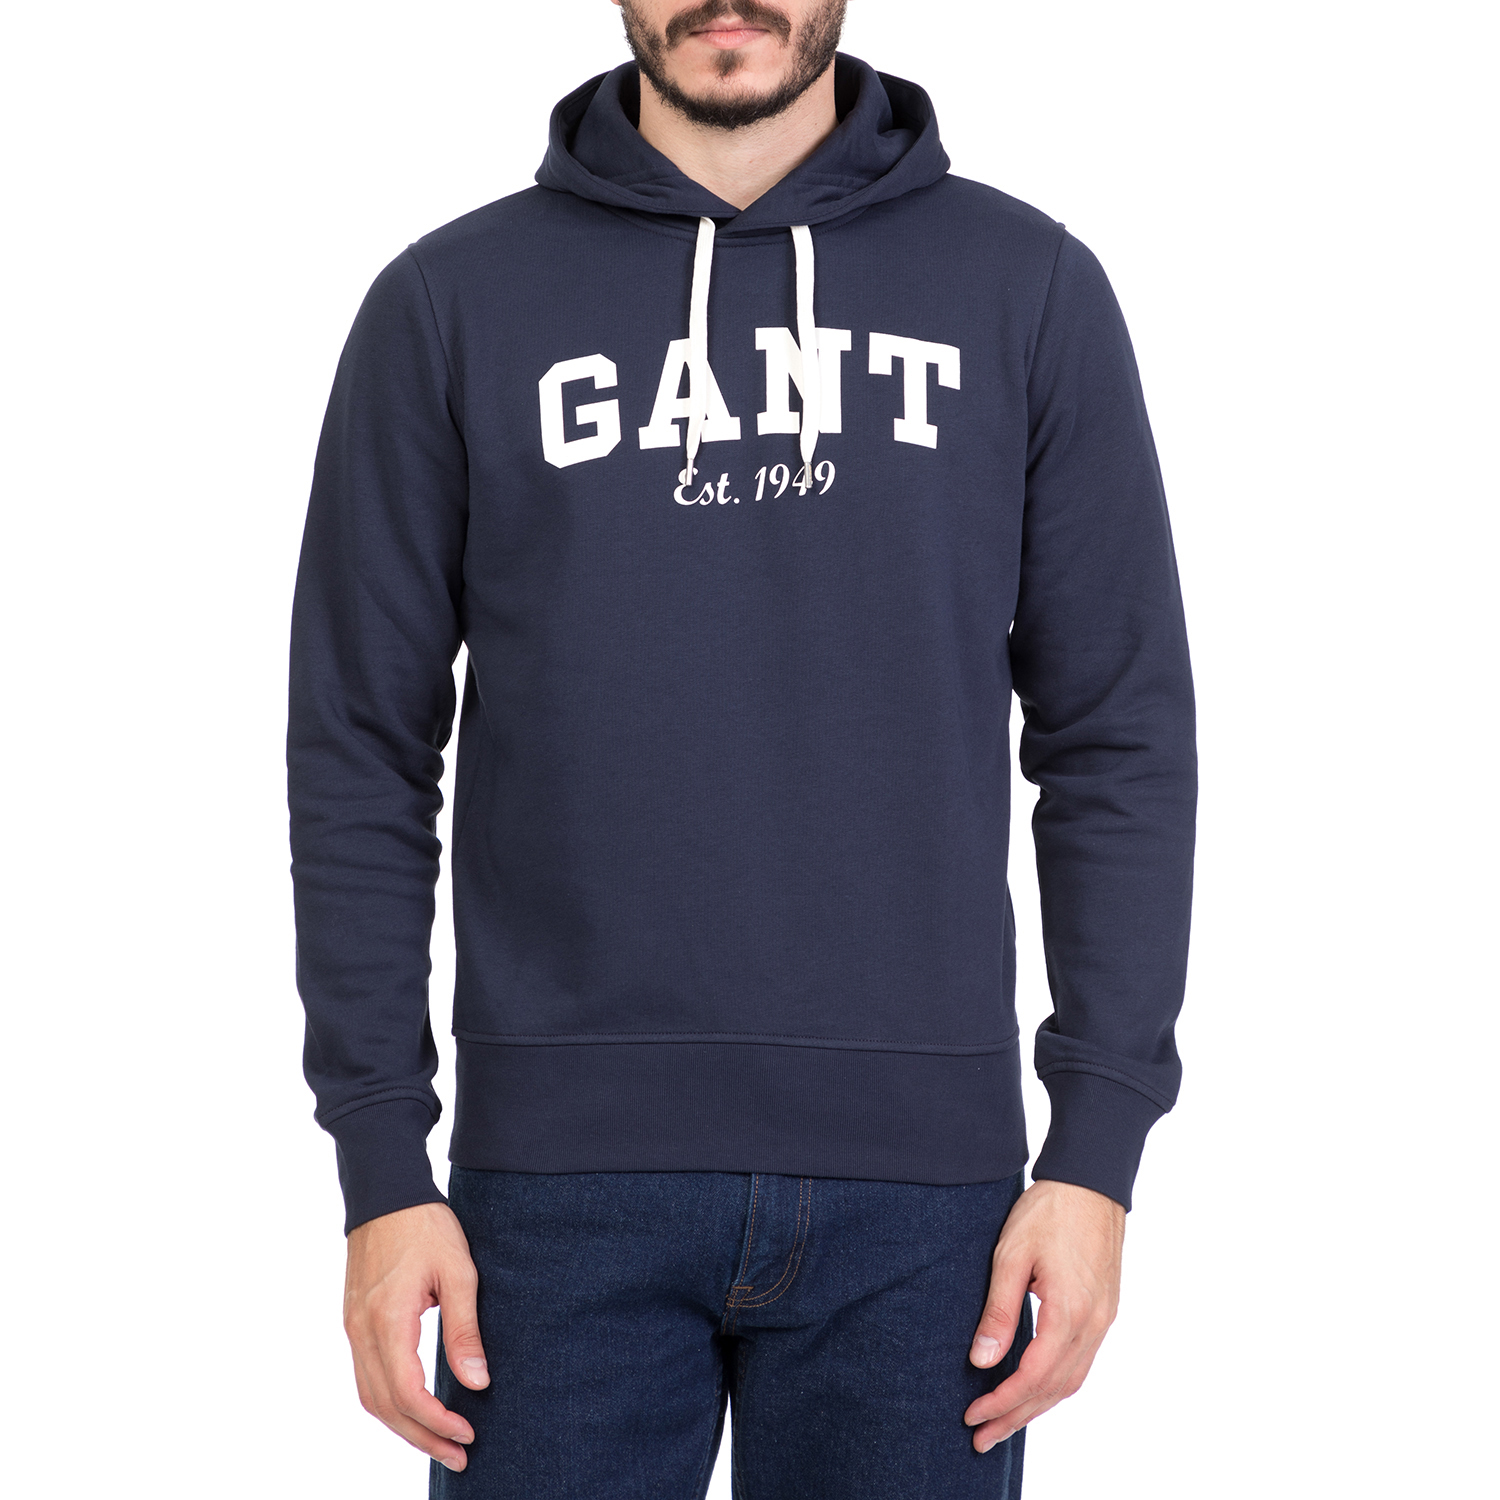 GANT Ανδρική φούτερ μπλούζα με κουκούλα GANT μπλε